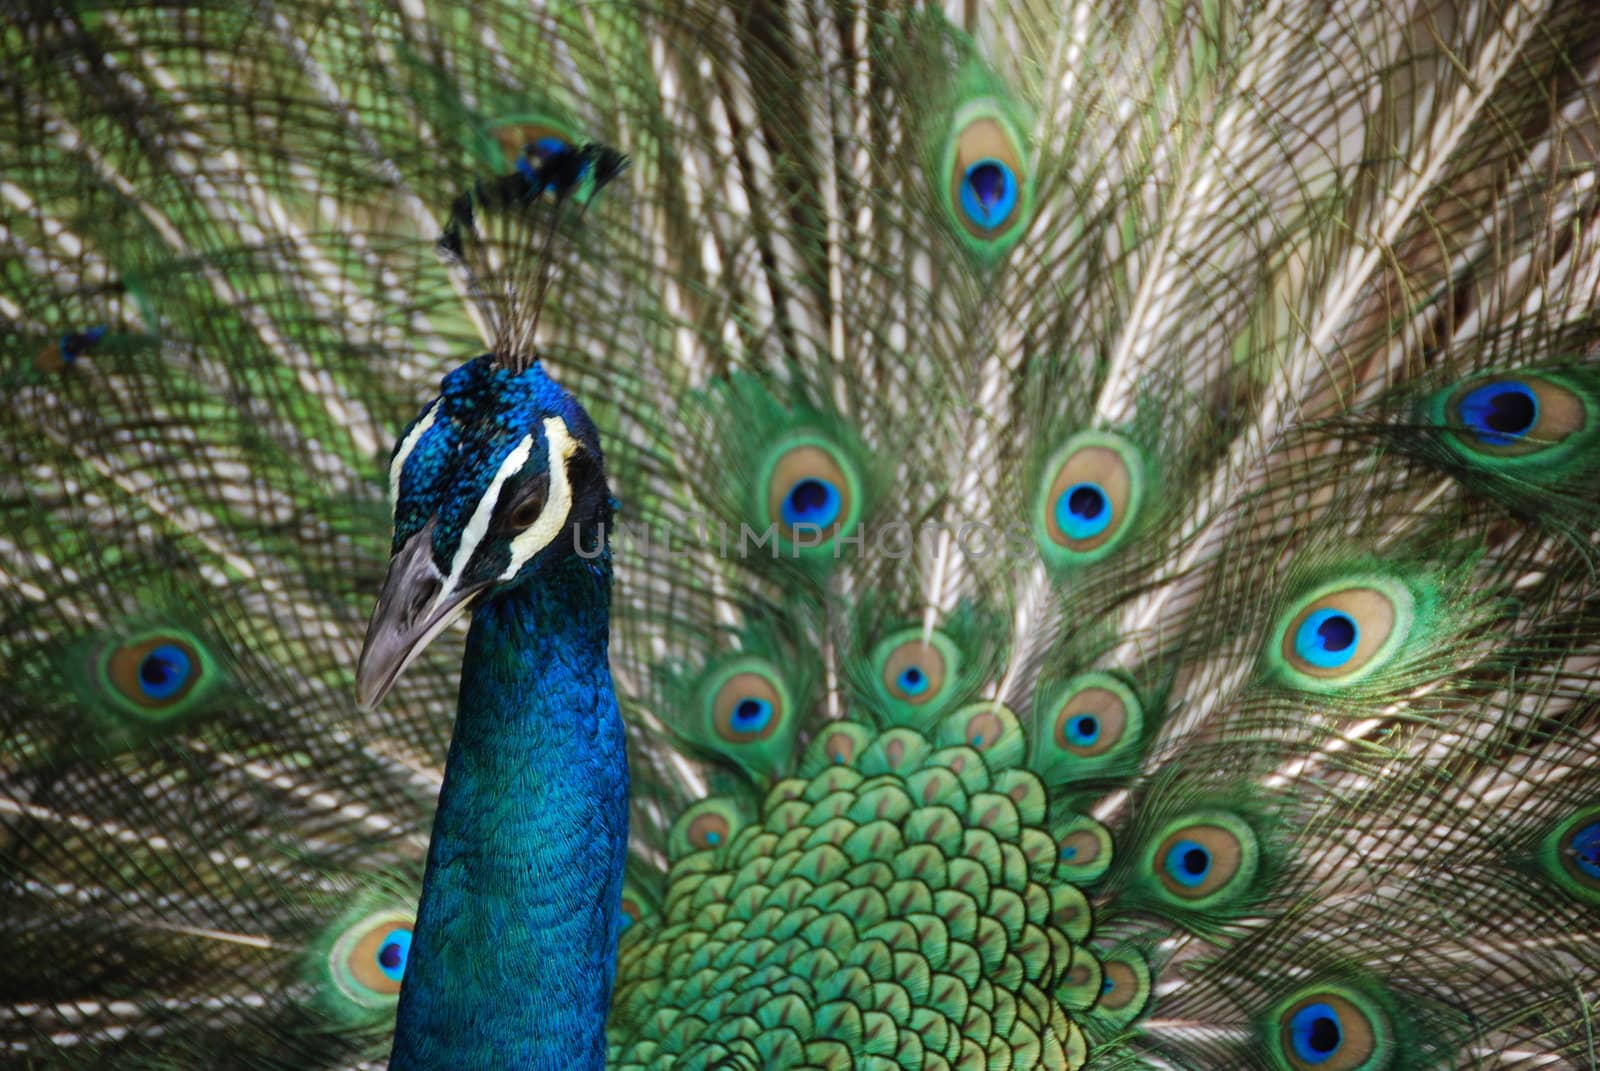 Peacock at a zoo